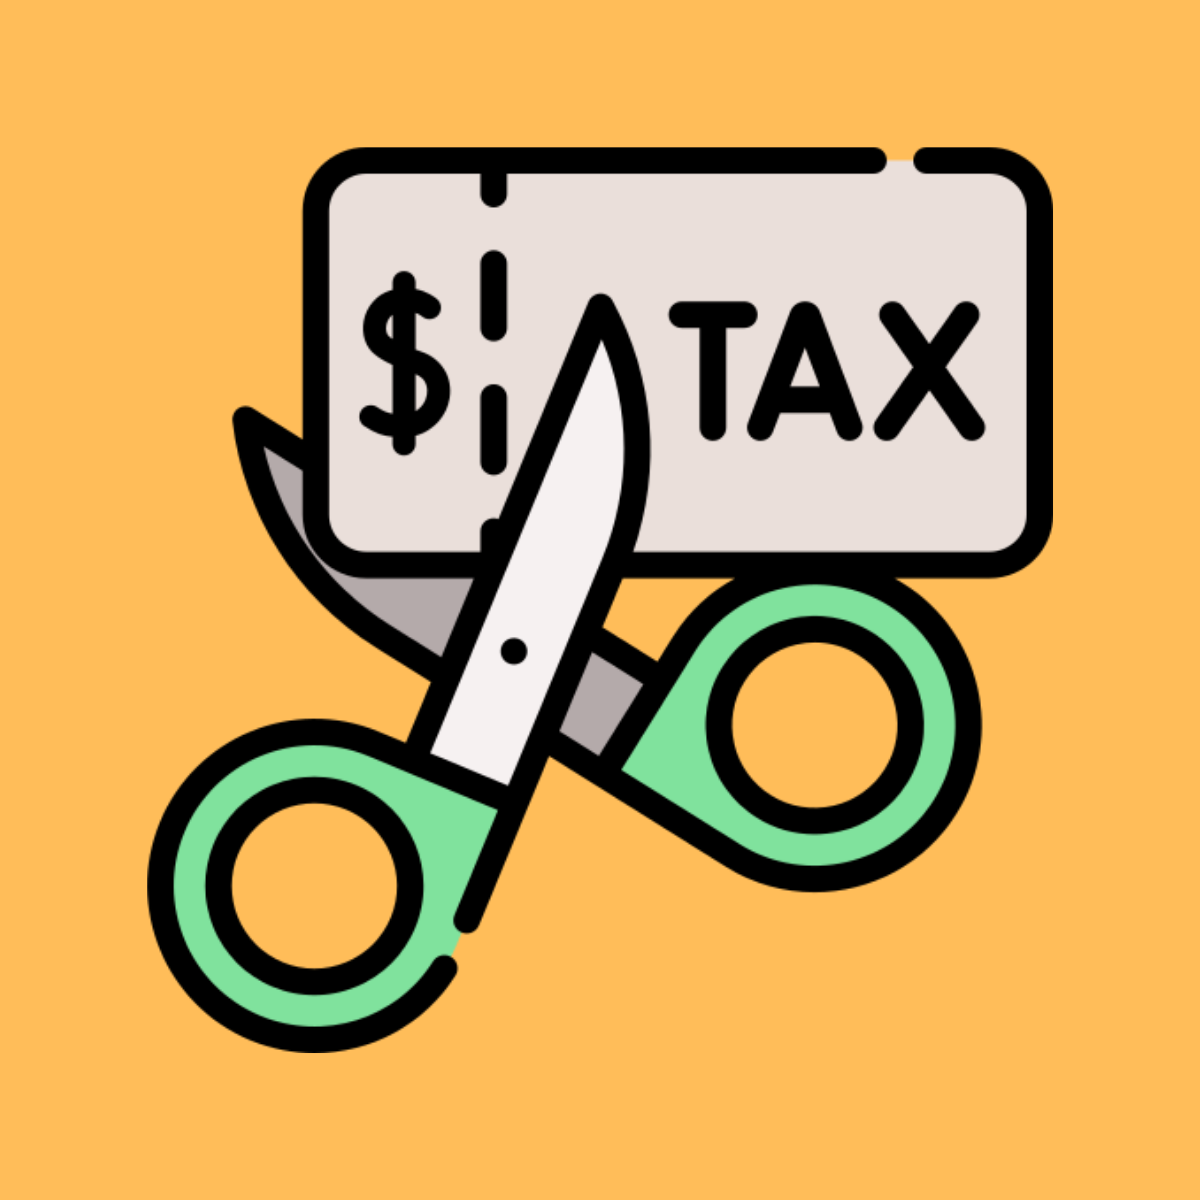 Maximize your Tax Savings